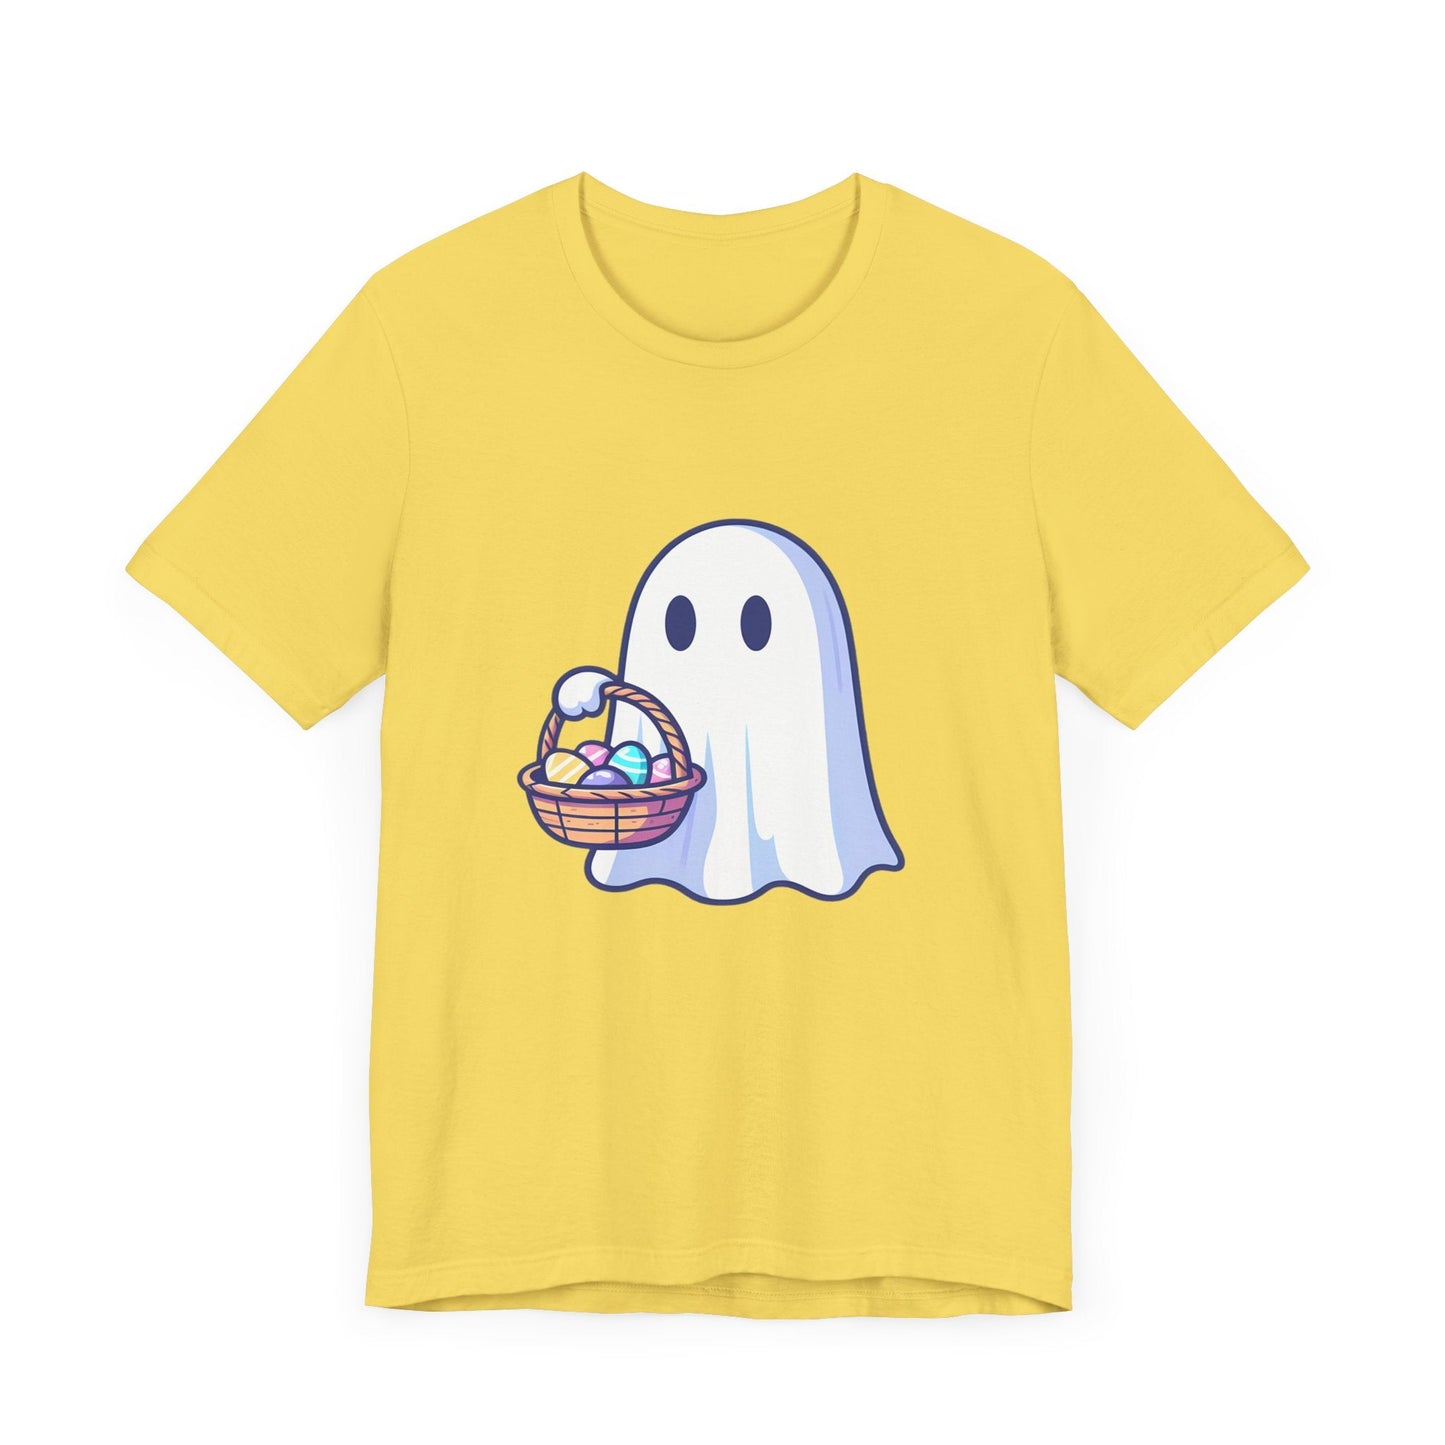 Ghost With Easter Basket Short Sleeve Tee ShirtT - ShirtVTZdesignsMaize YellowXSCottonCrew neckDTG